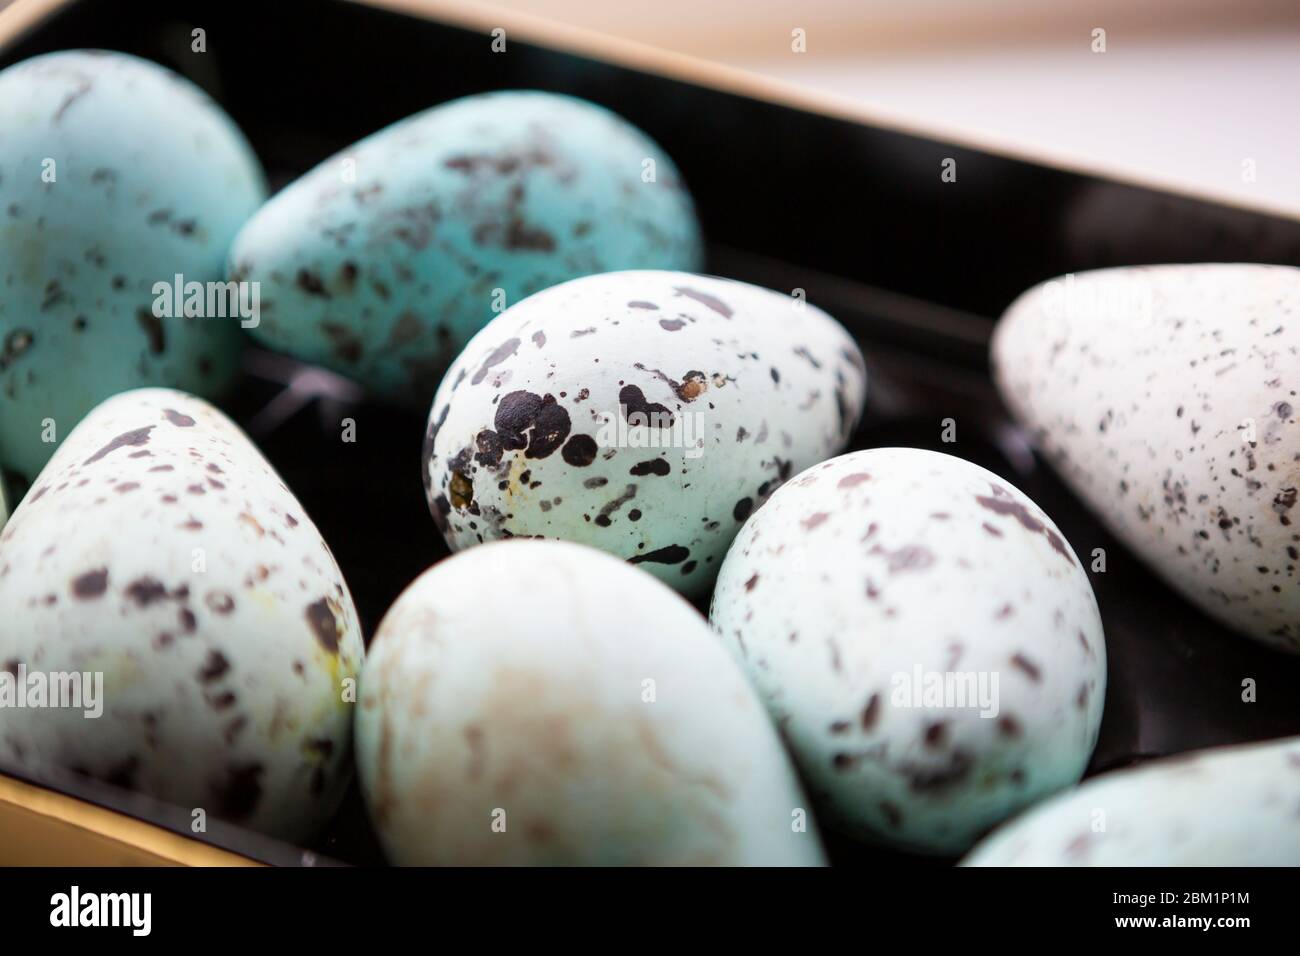 Eine Reihe von Guillemot-Eiern. Der Fokus ist flach und konzentriert sich auf das mittlere Ei. Stockfoto